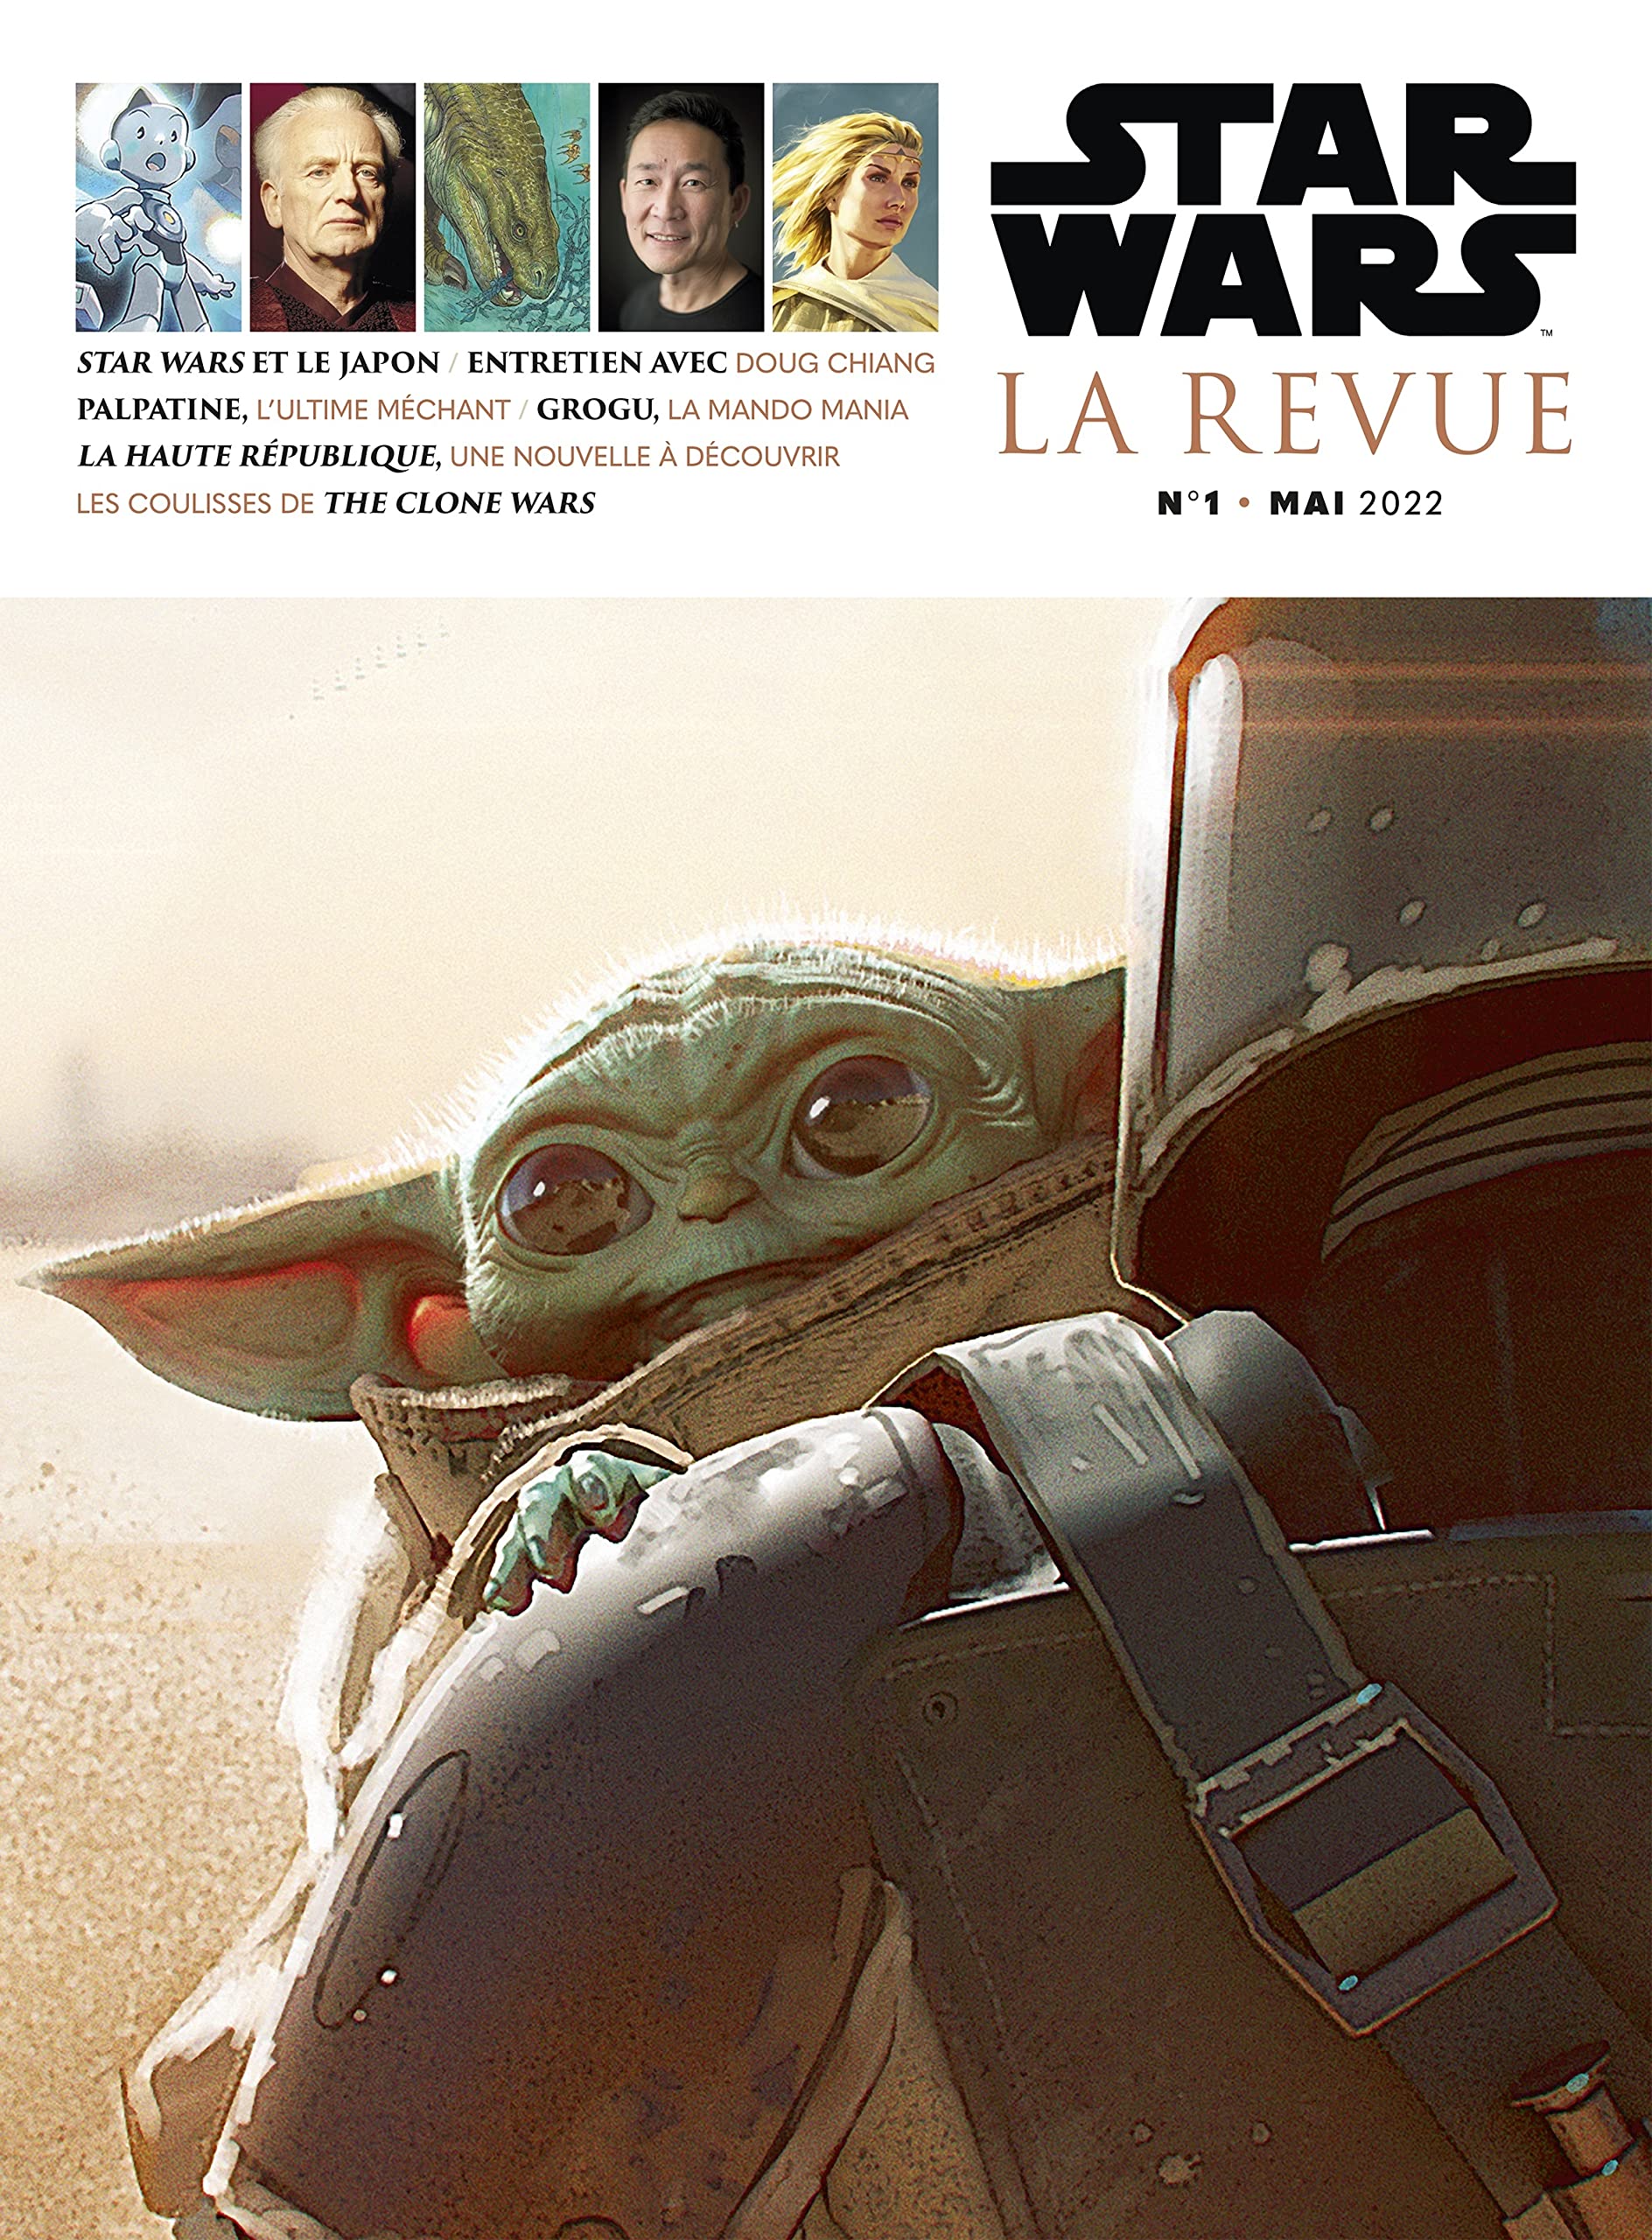 Traduction d'articles dans le numéro 1 de Star Wars - La Revue